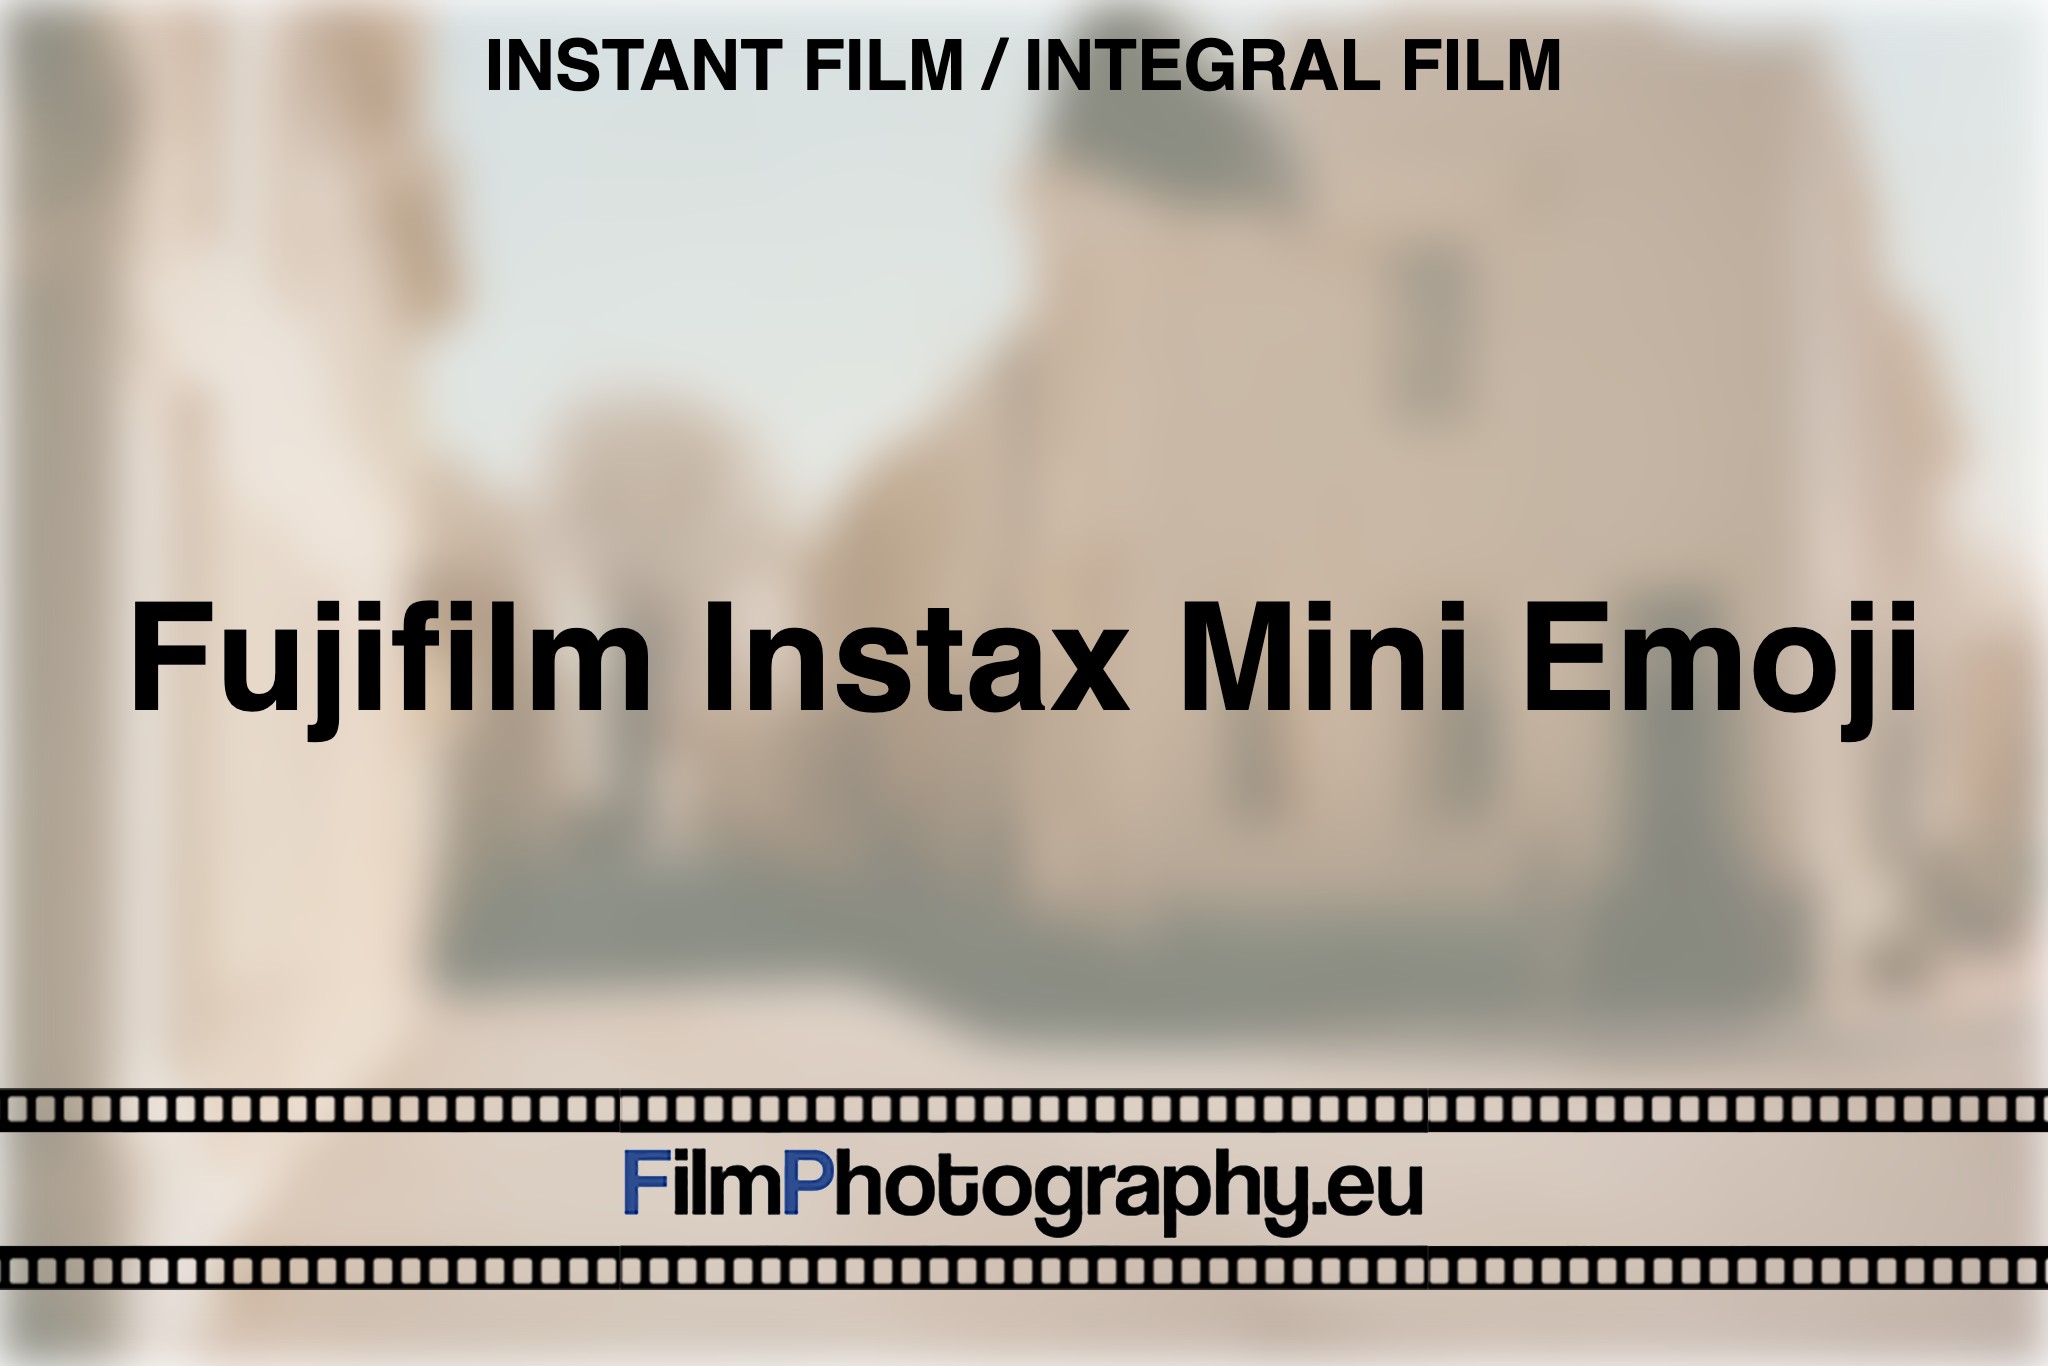 fujifilm-instax-mini-emoji-instant-film-integral-film-bnv